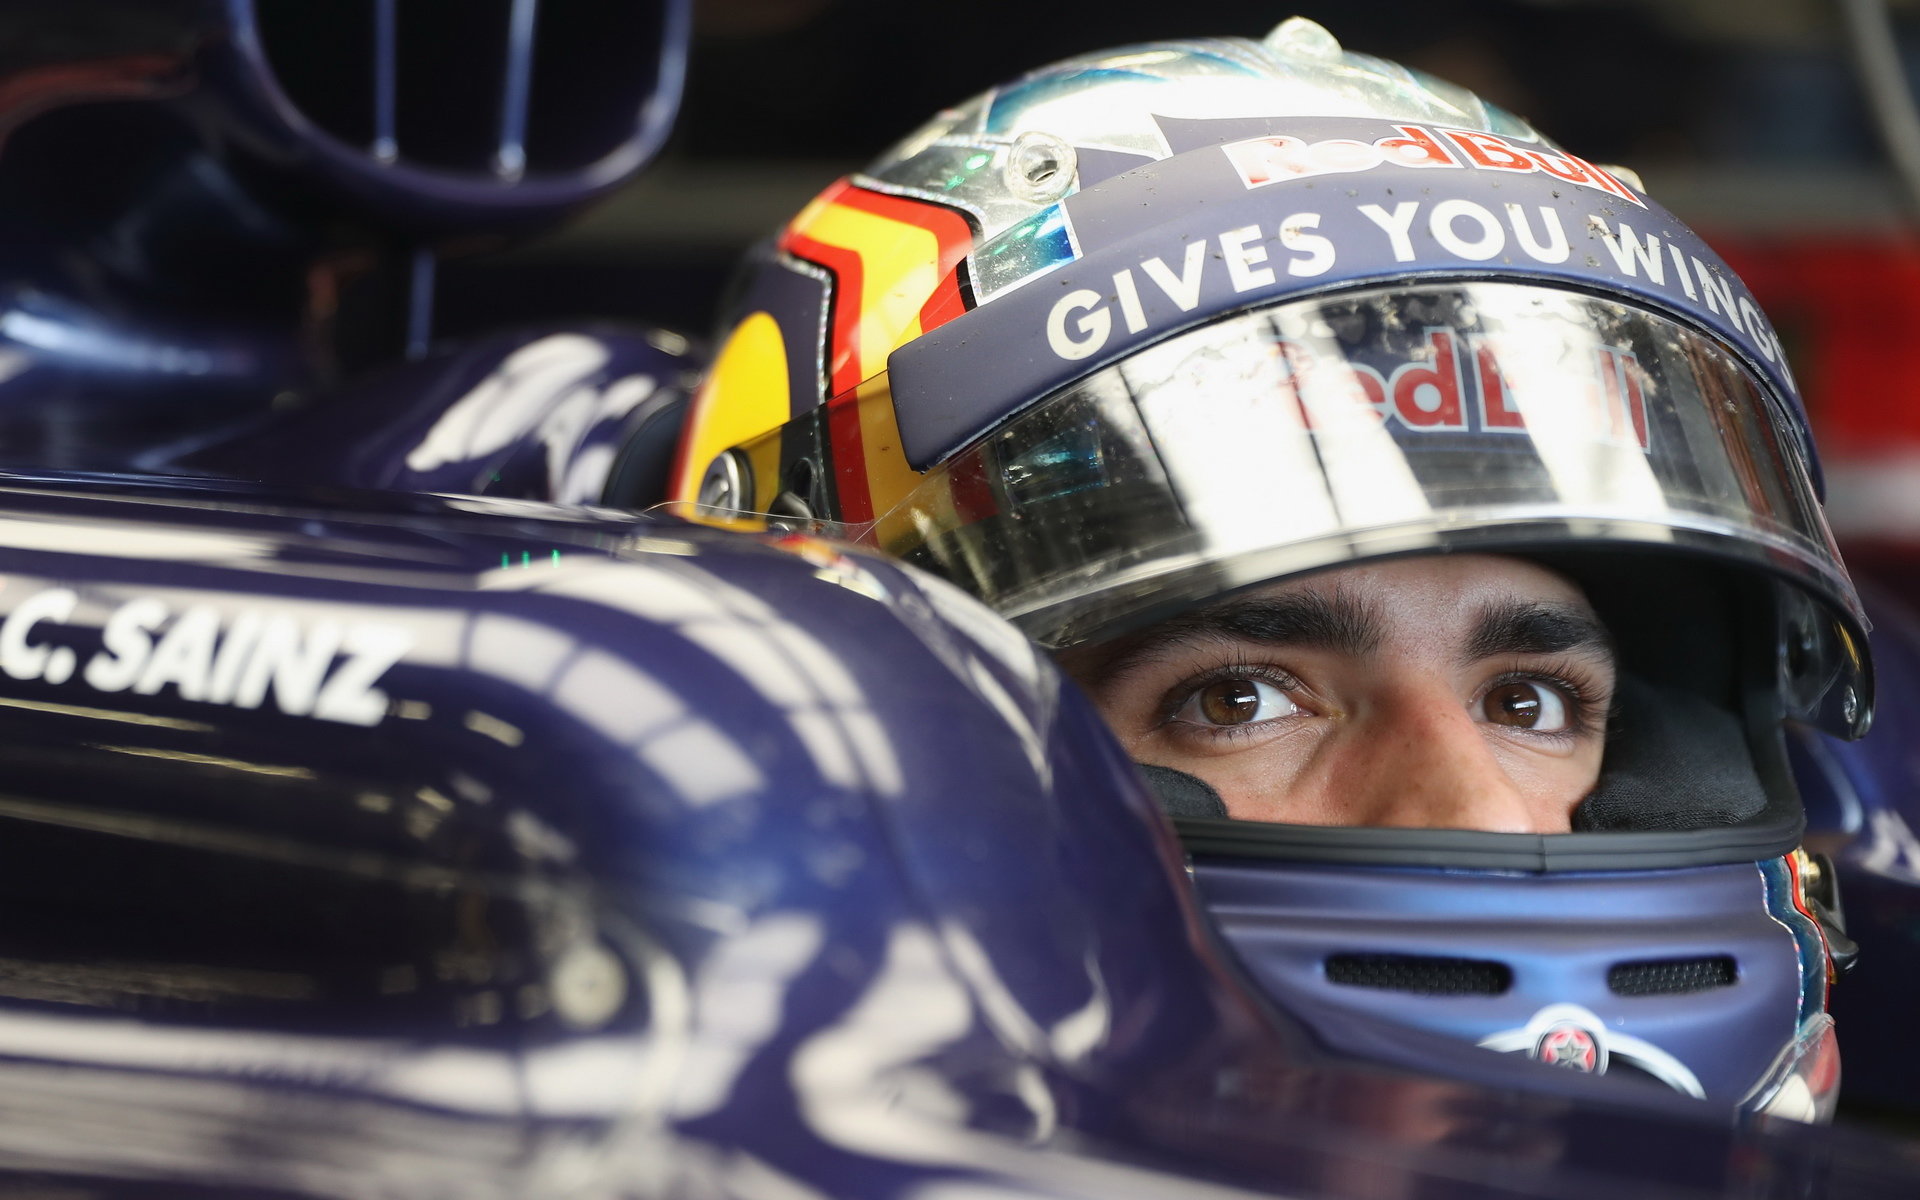 Carlos Sainz při posledních sezónních testech v Silverstone, první den